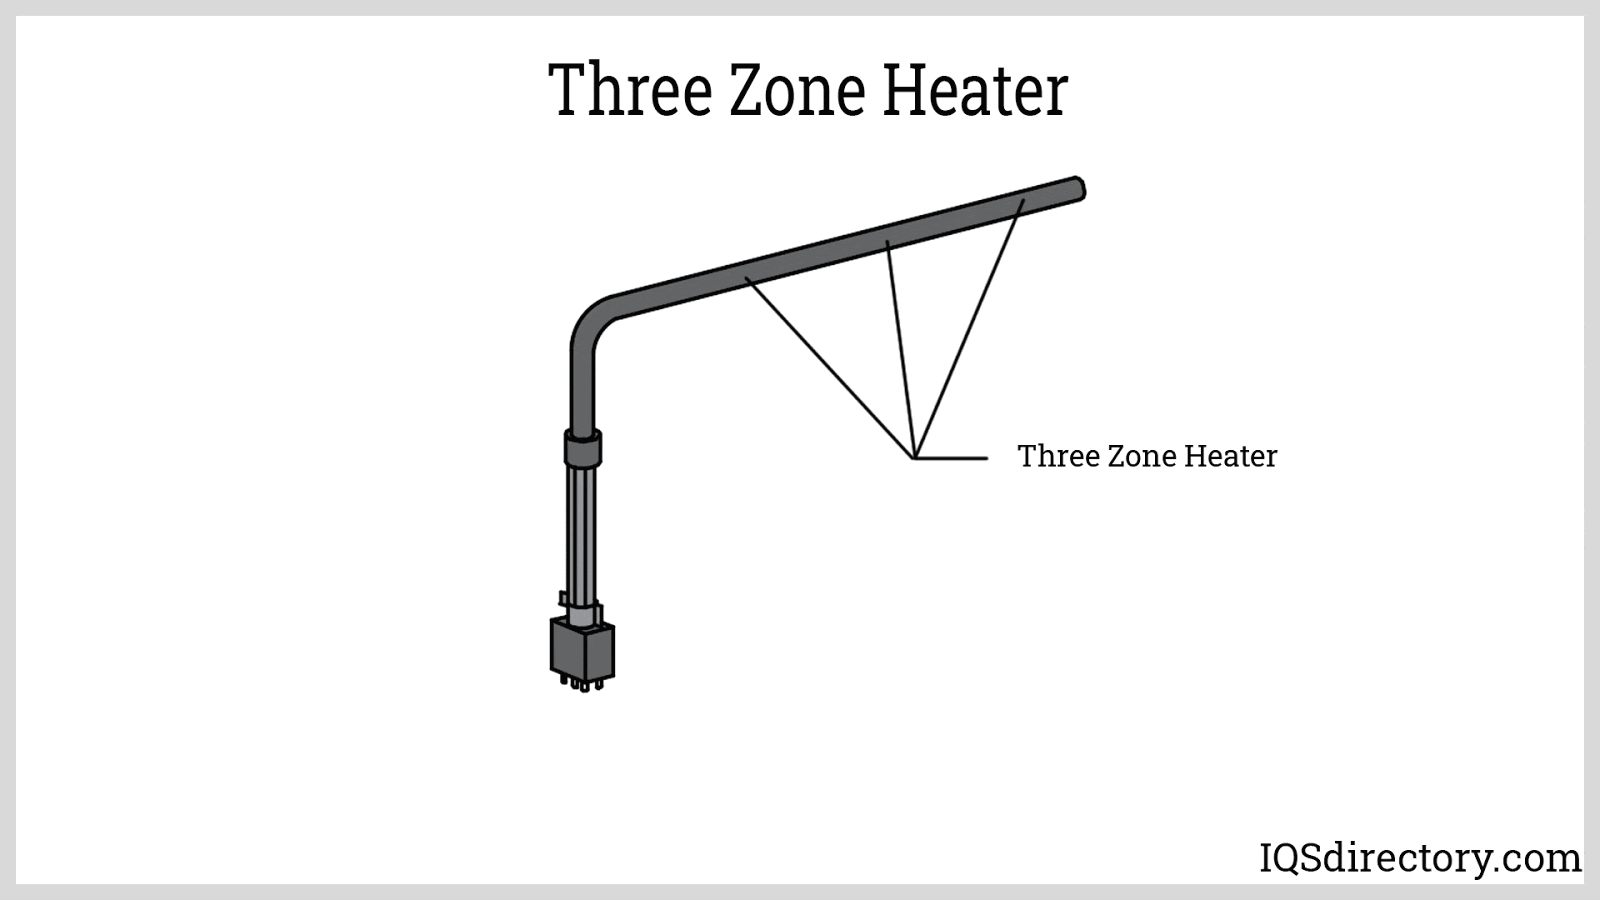 Three Zone Heater